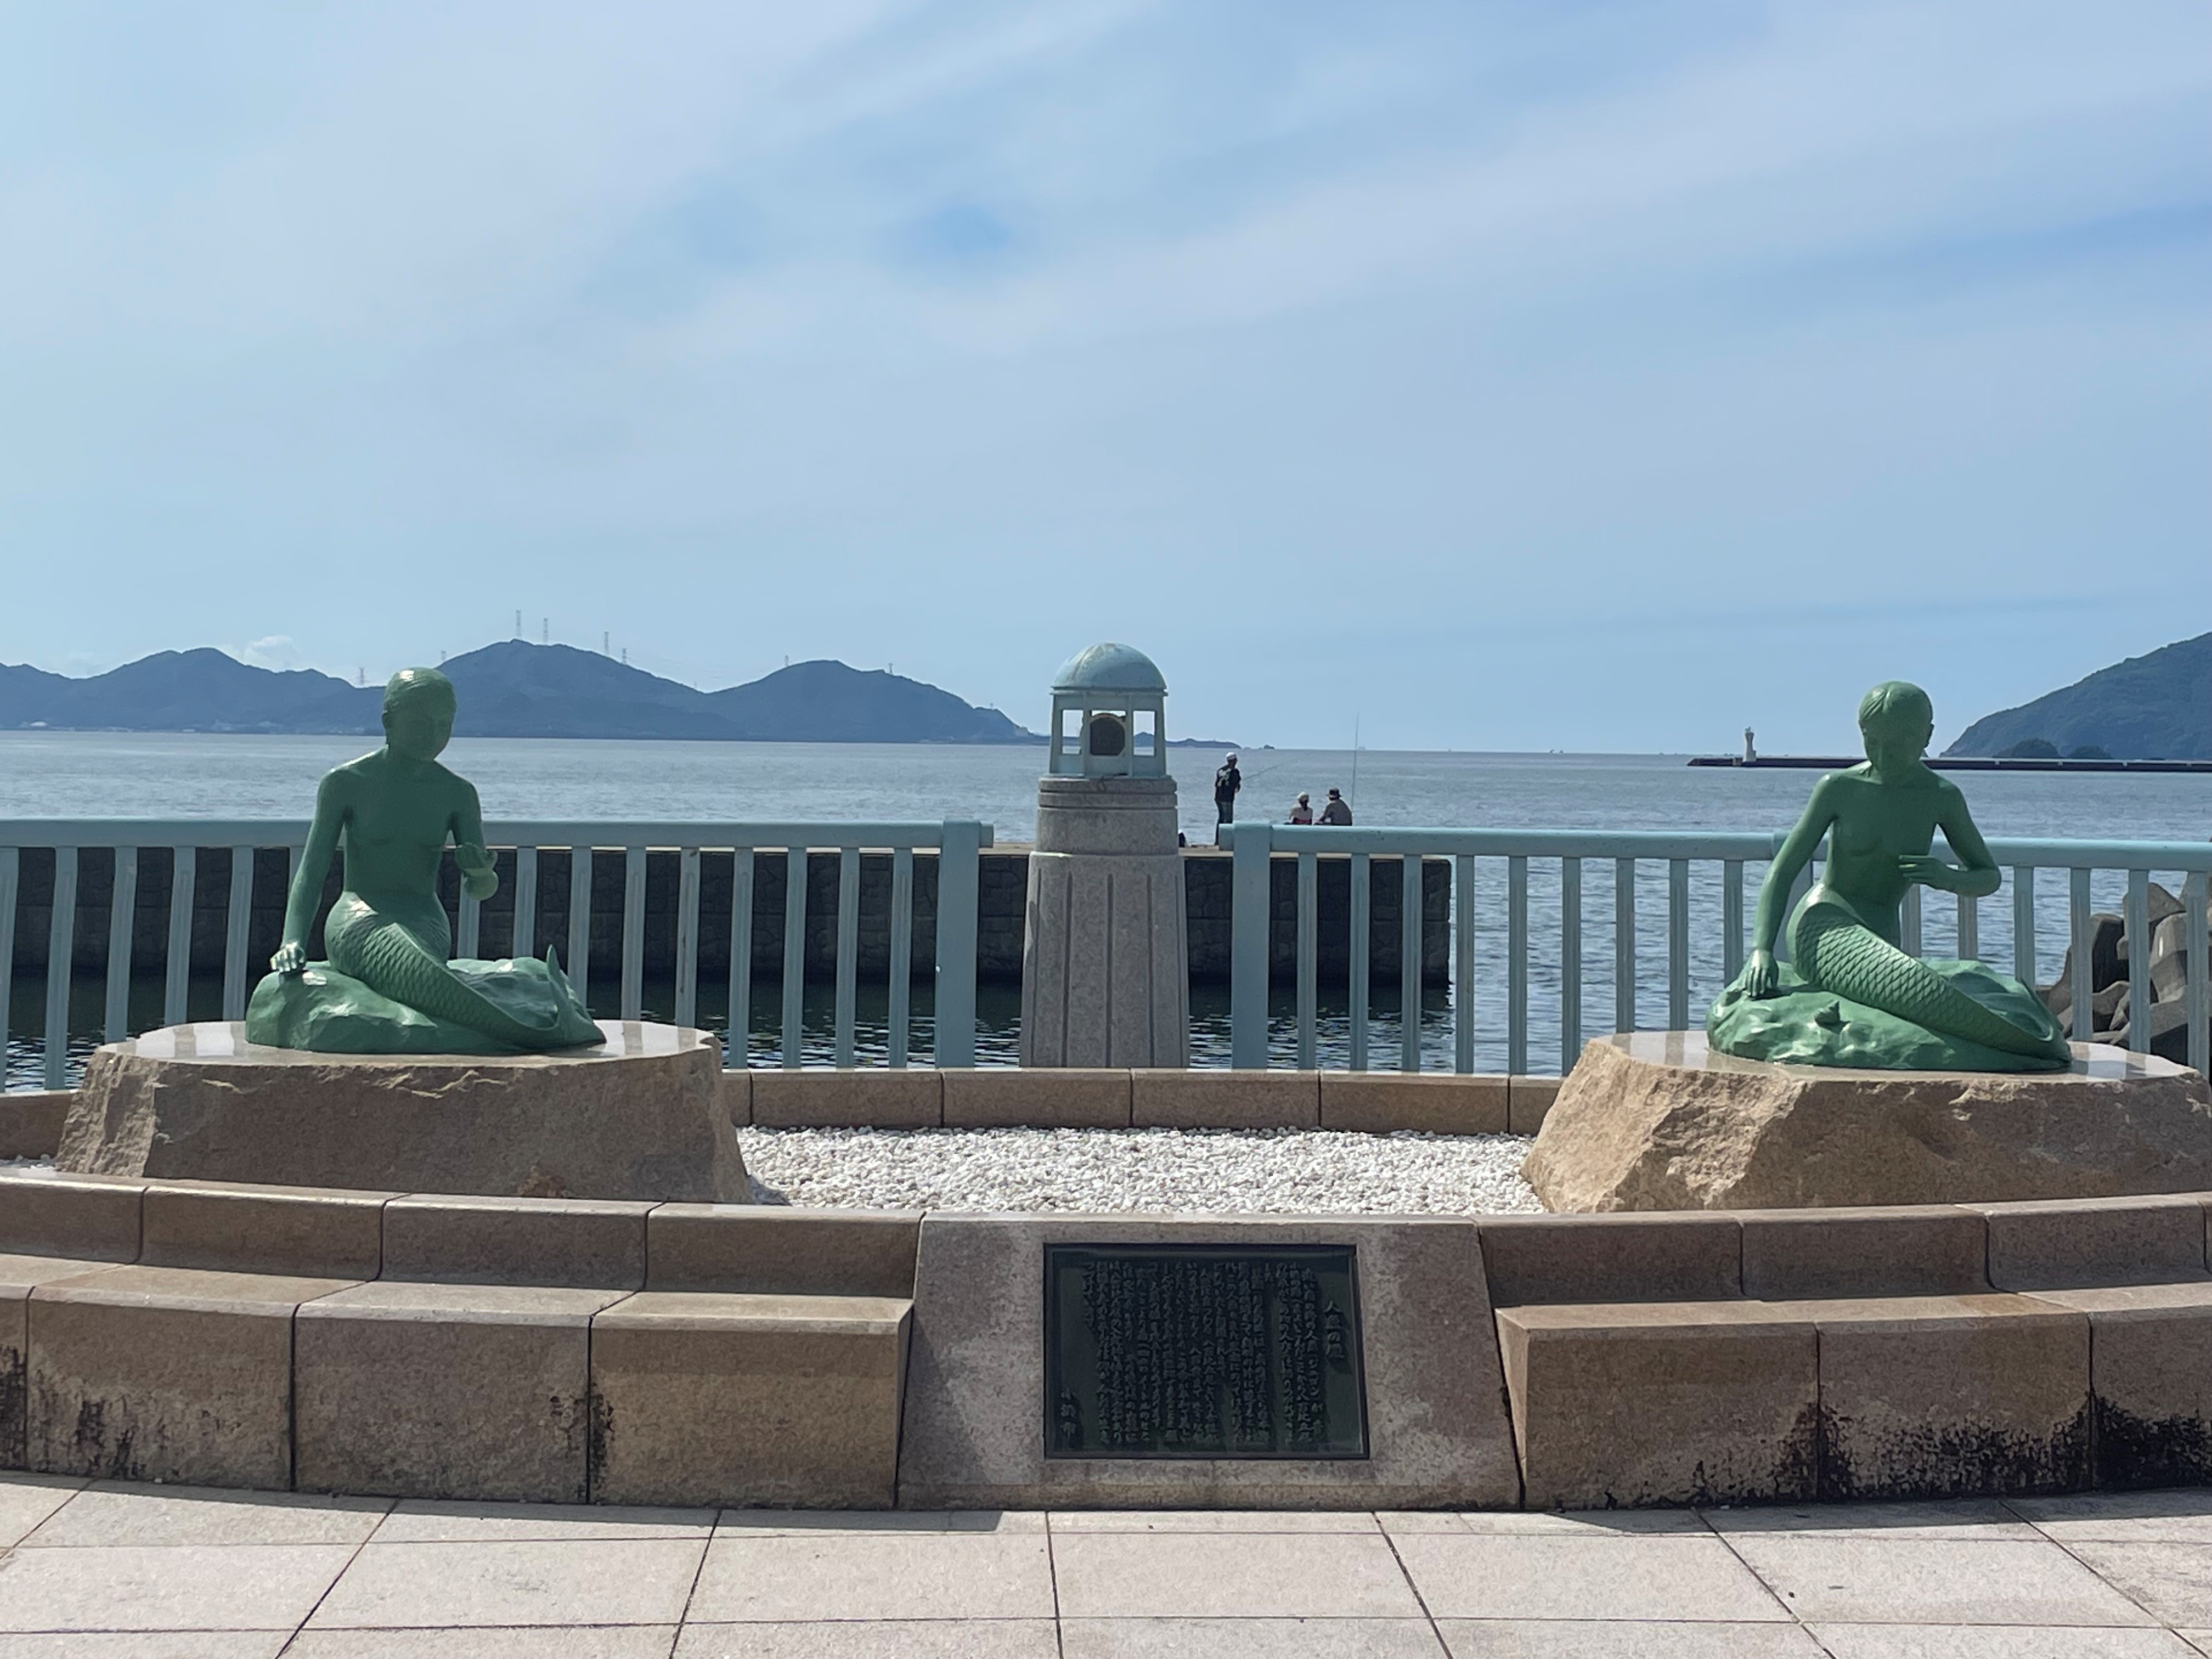 【人魚の像】2体の人魚の像が建ち、人魚伝説が残る小浜市の観光名所